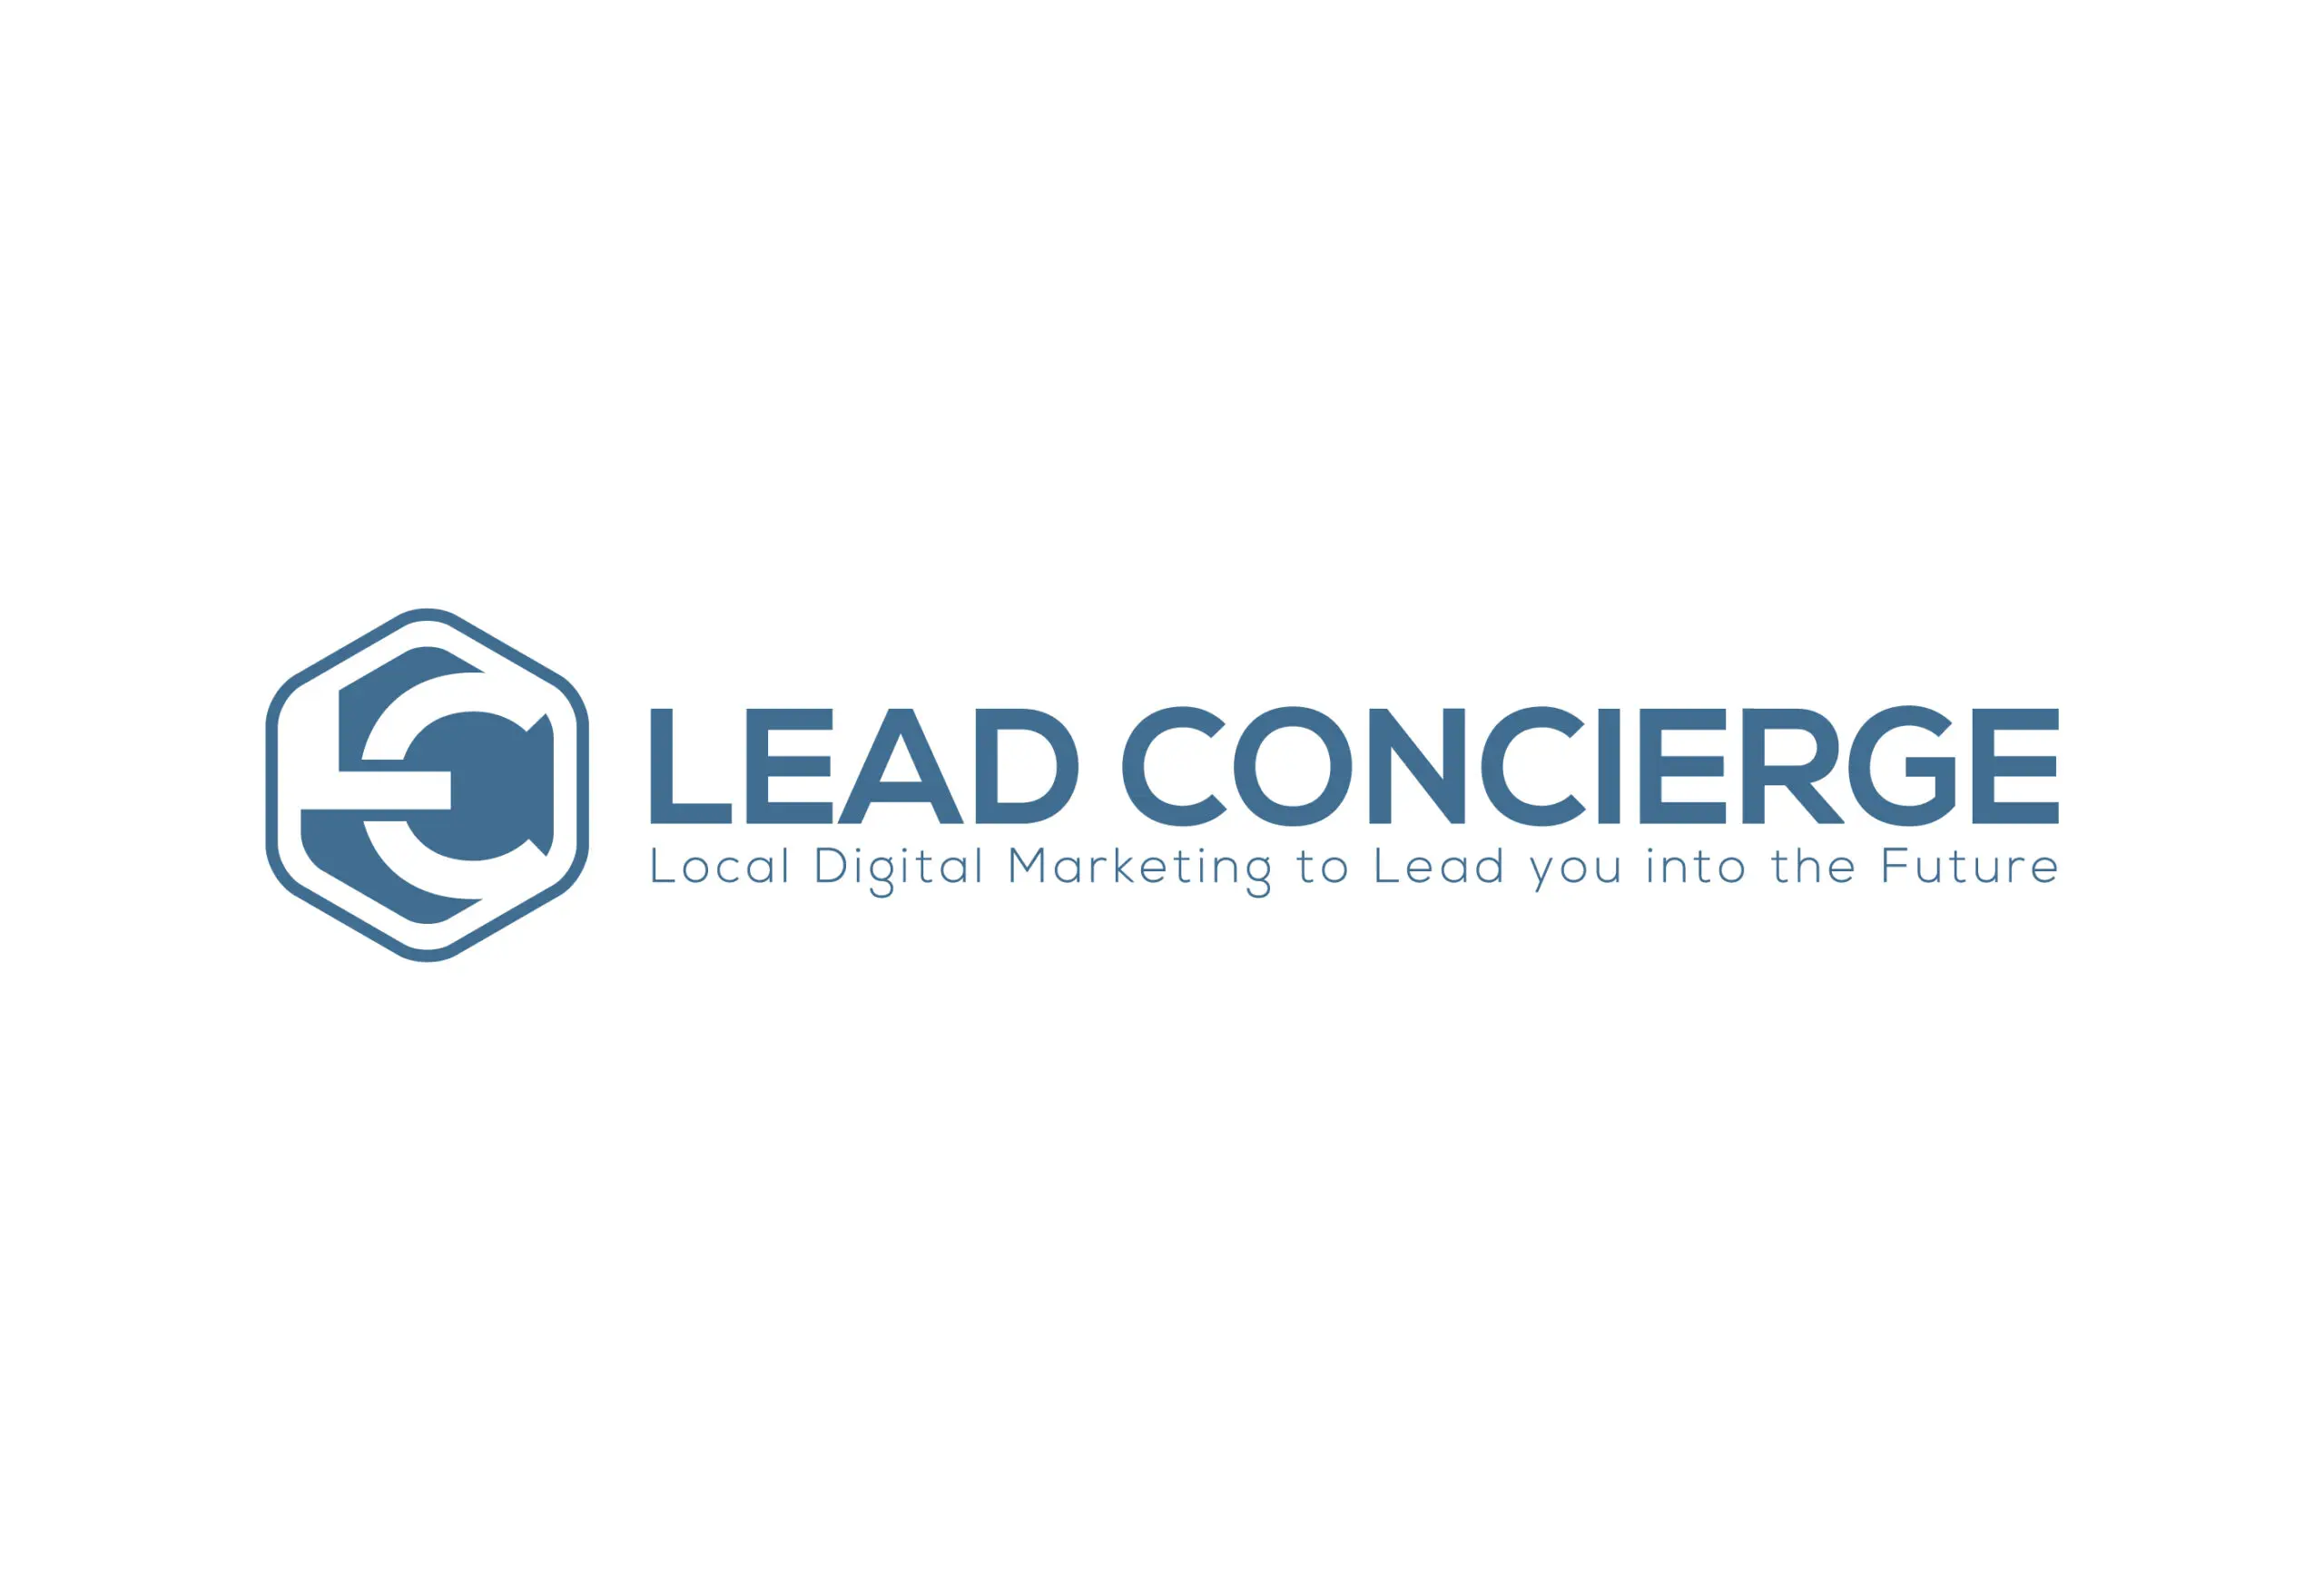 Lead Concierge